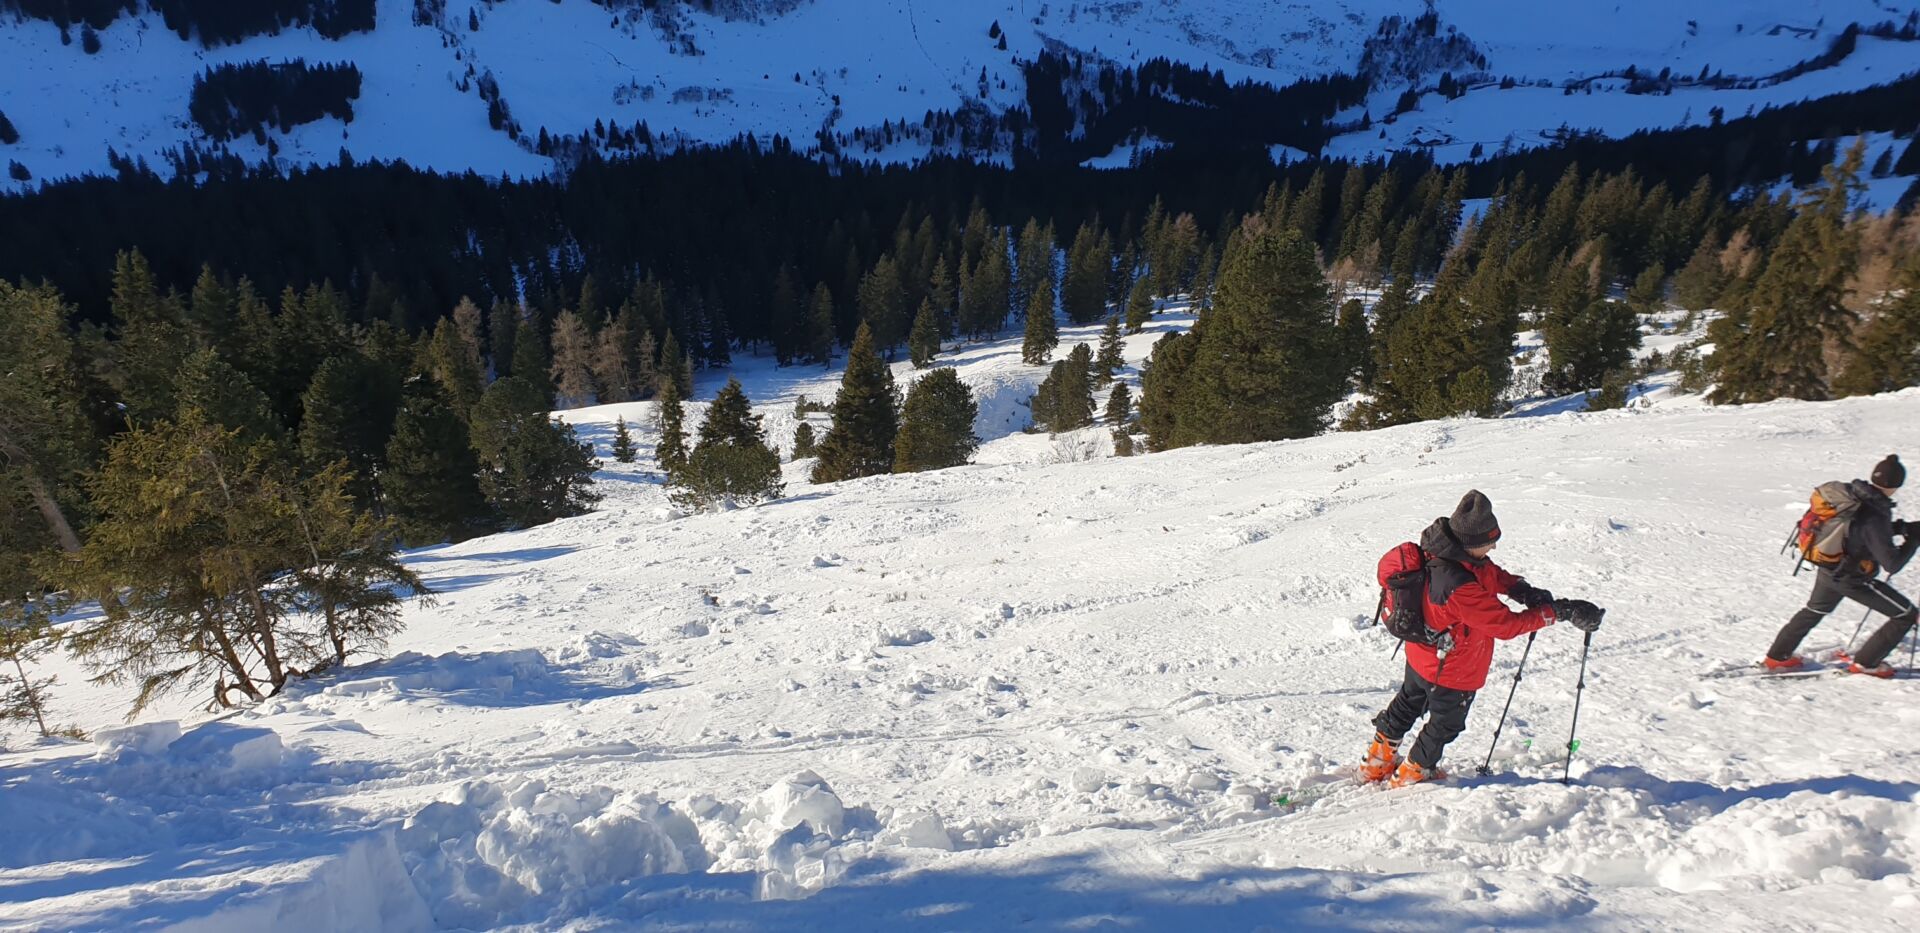 Αυστρία: Οκτώ νεκροί σε δύο μέρες από χιονοστιβάδες στο Τυρόλο